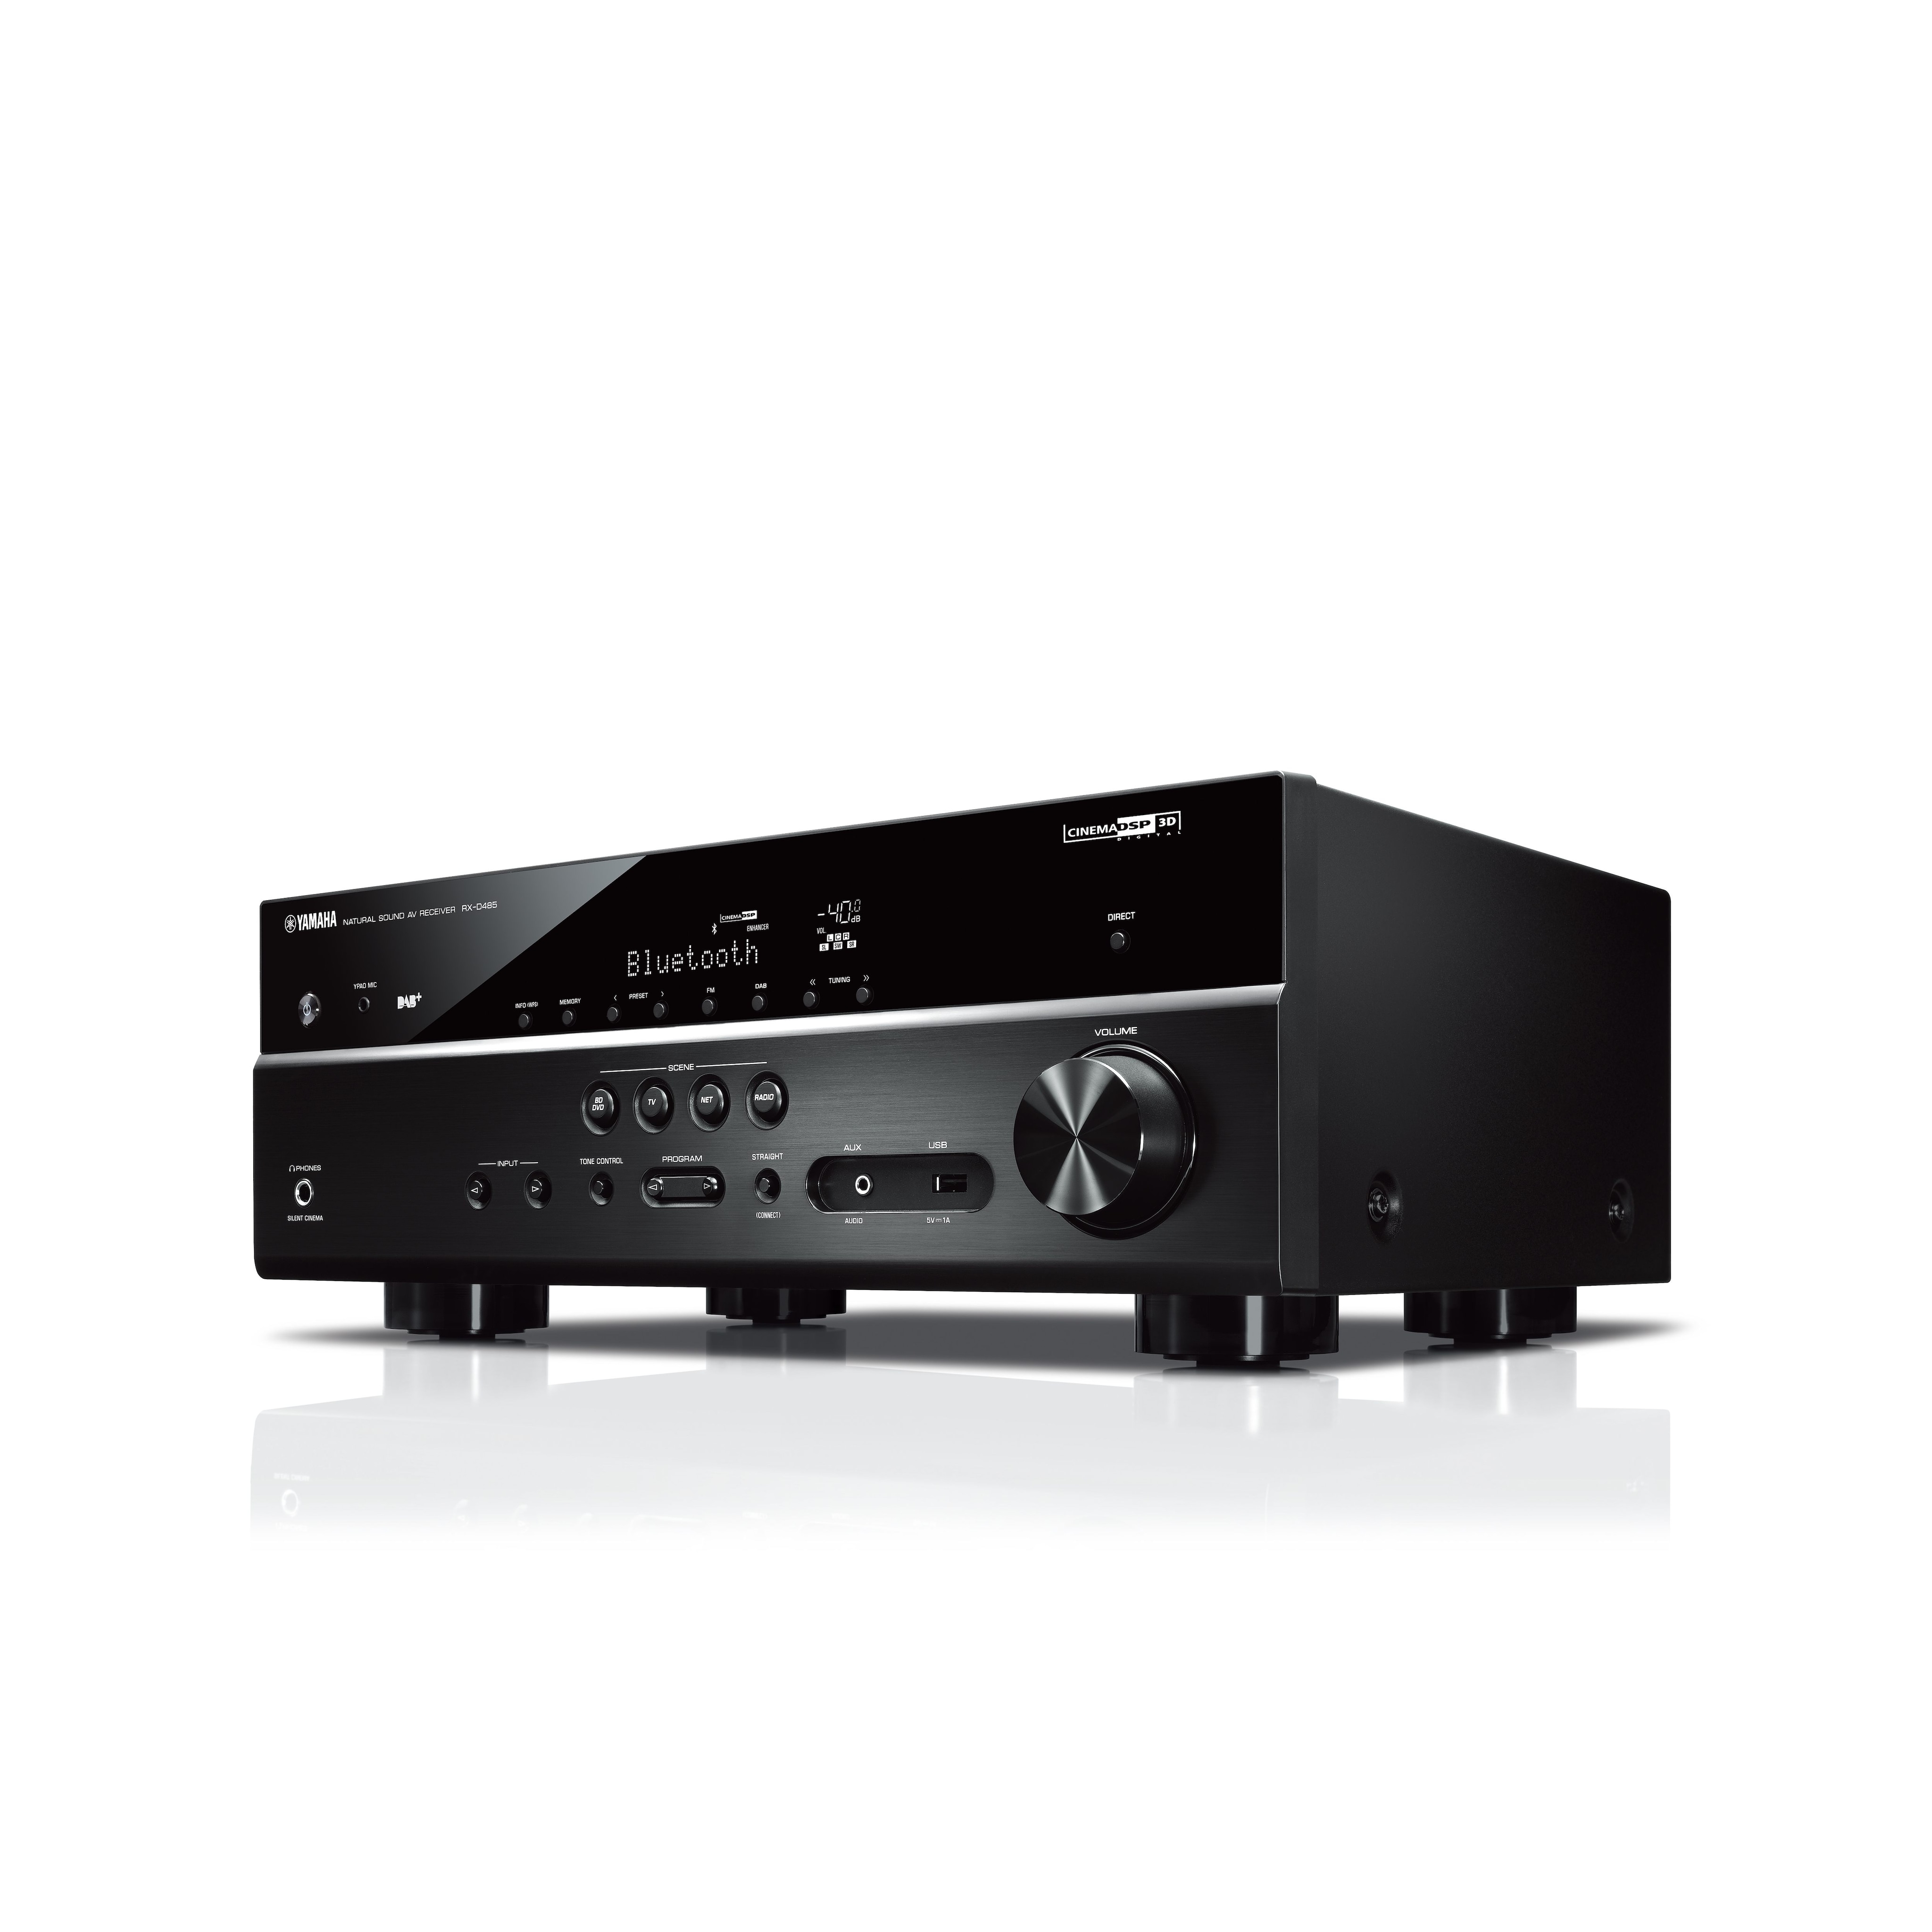 RX-D485 - Übersicht - AV-Receiver - Audio & Video - Produkte ...